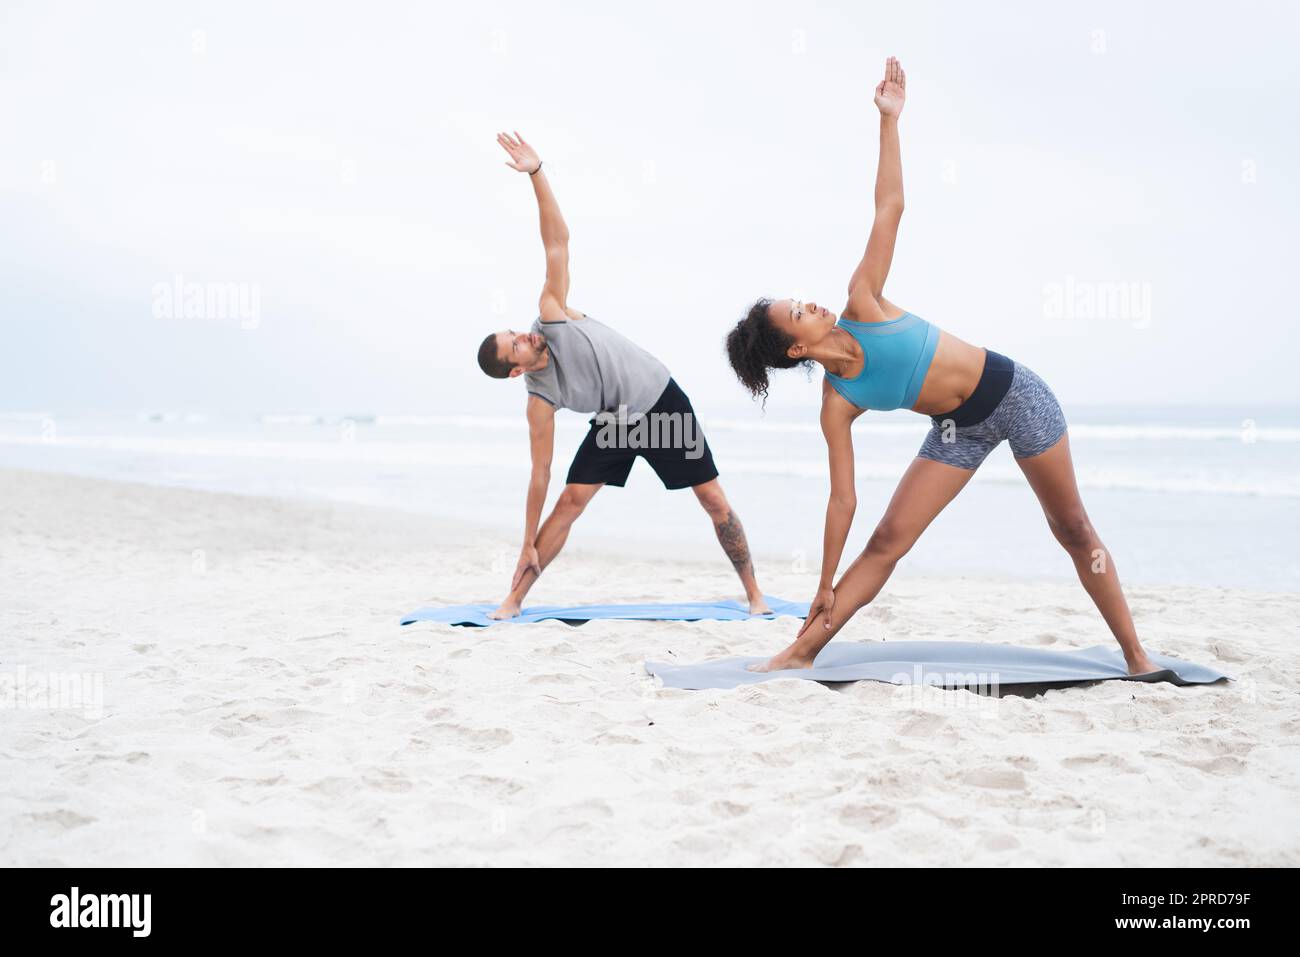 Yoga steht im Mittelpunkt ihres Wohlbefindens. Ein junger Mann und eine junge Frau praktizieren gemeinsam am Strand Yoga. Stockfoto